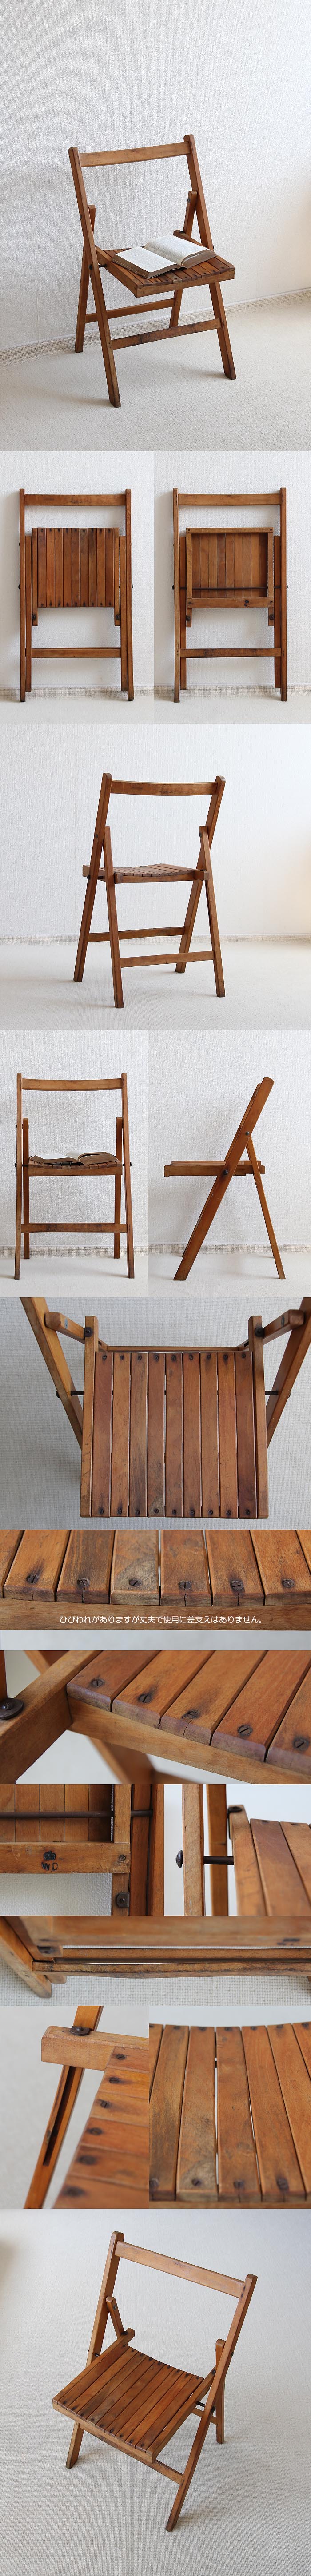 イギリス アンティーク フォールディングチェア 古木 木製 インテリア 家具「折りたたみ椅子」P-370